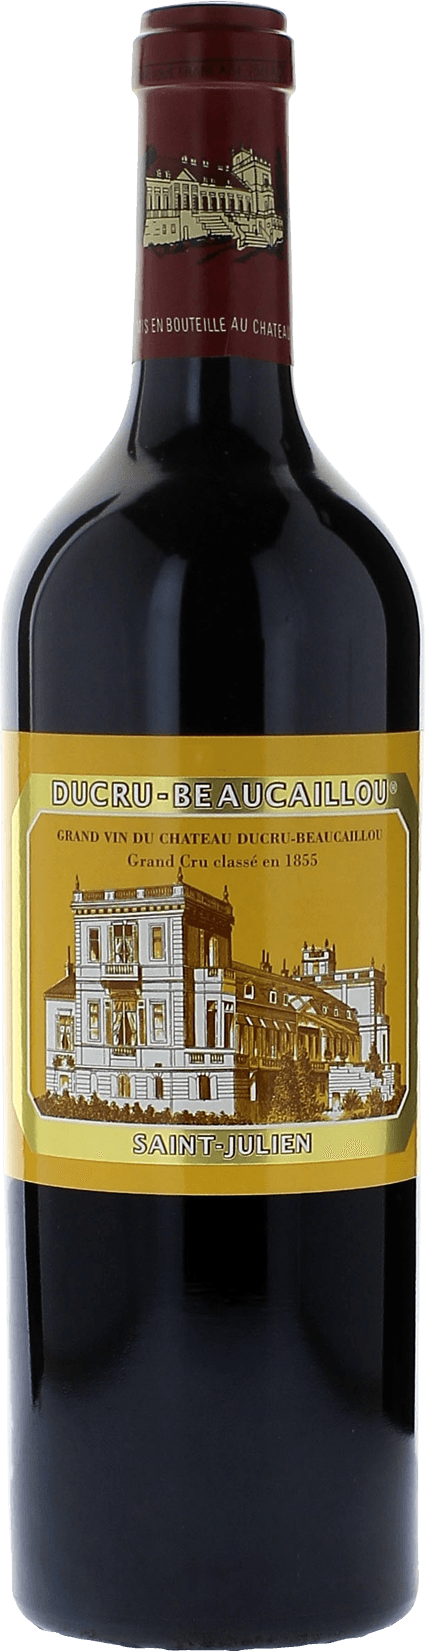 Ducru beaucaillou 2018 2me Grand cru class Saint-Julien, Bordeaux rouge